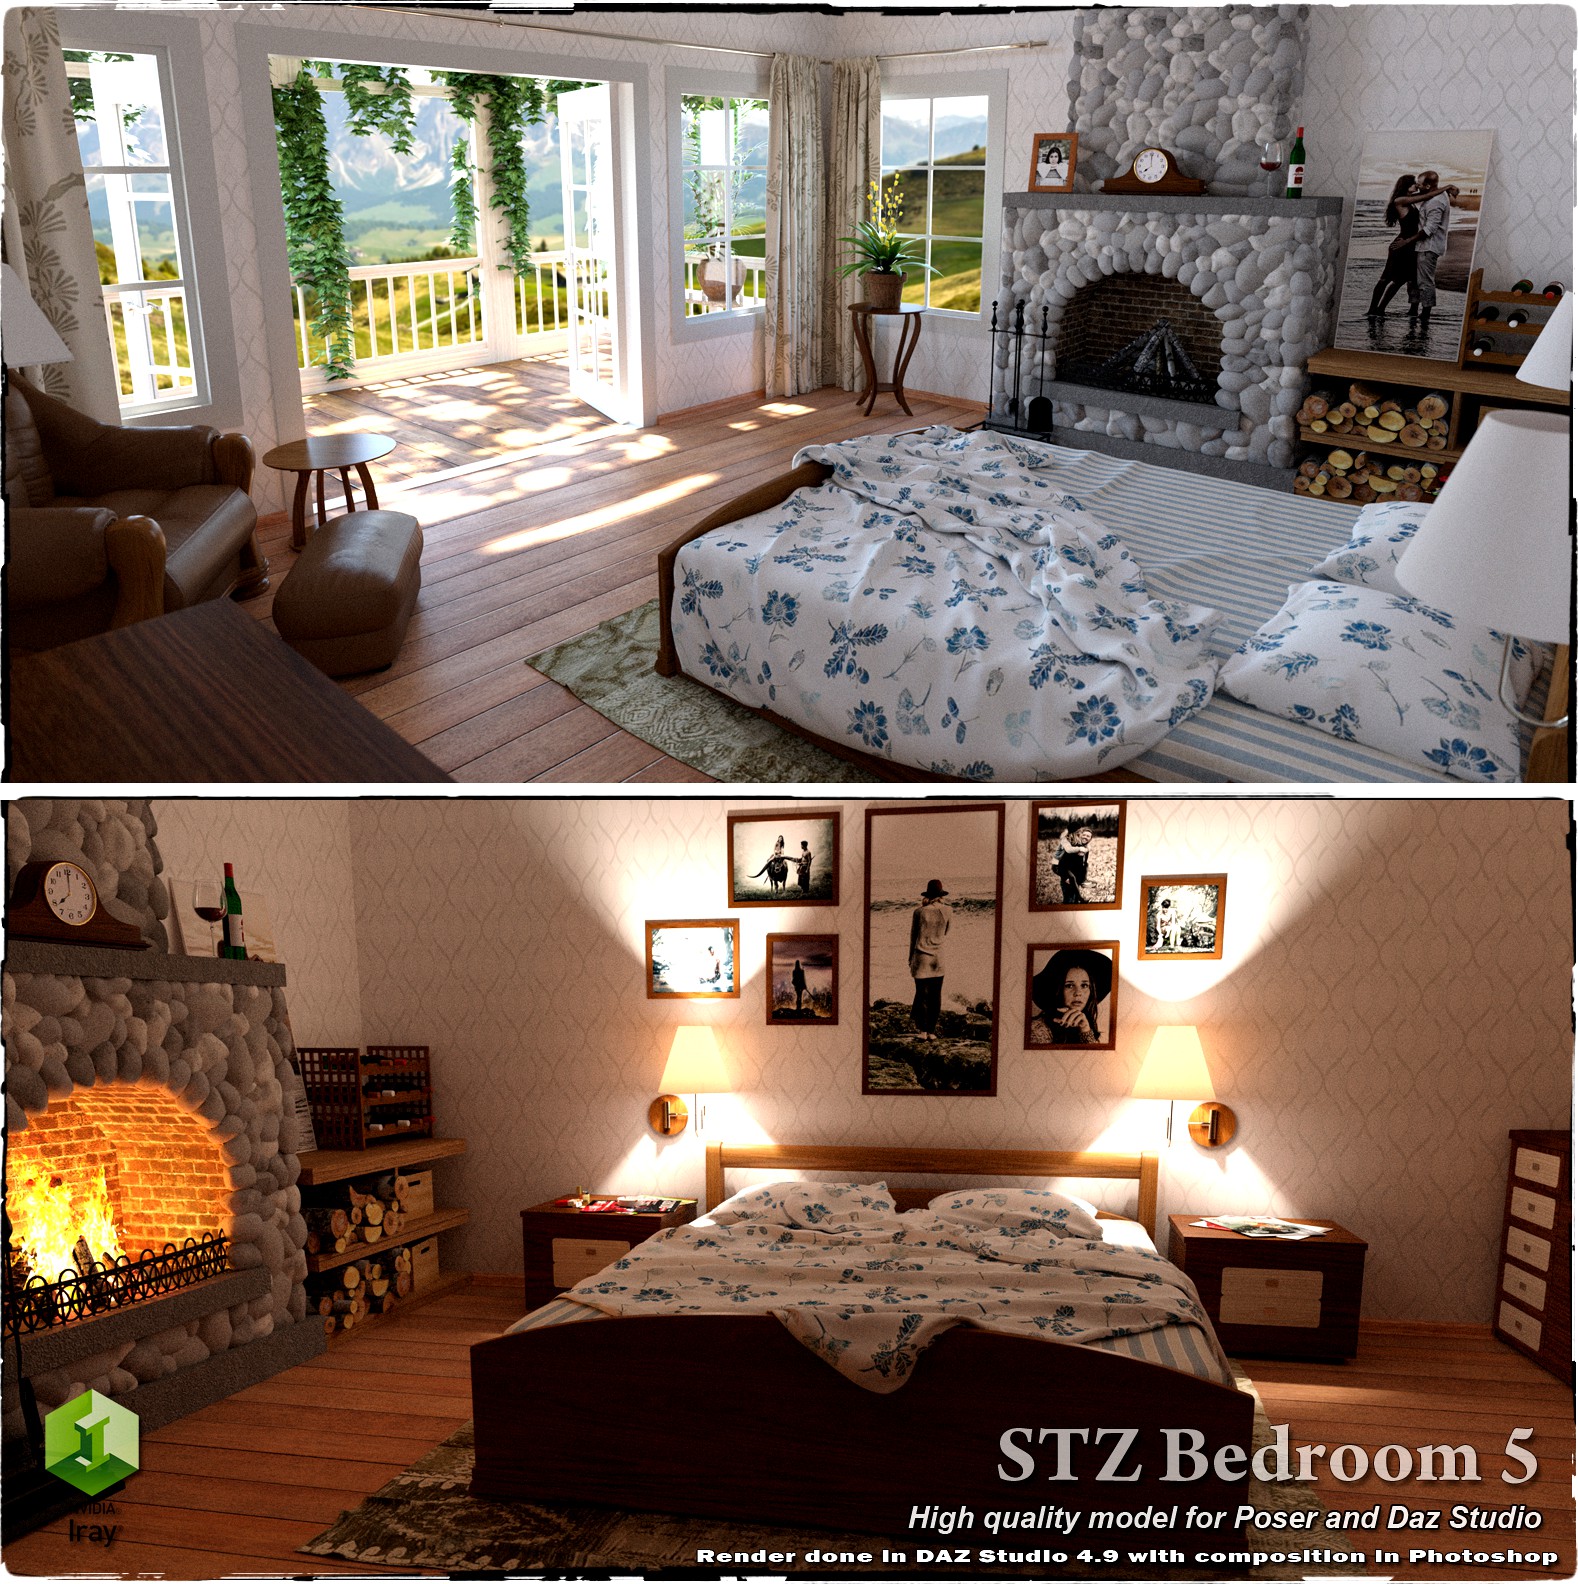 STZ Bedroom 5